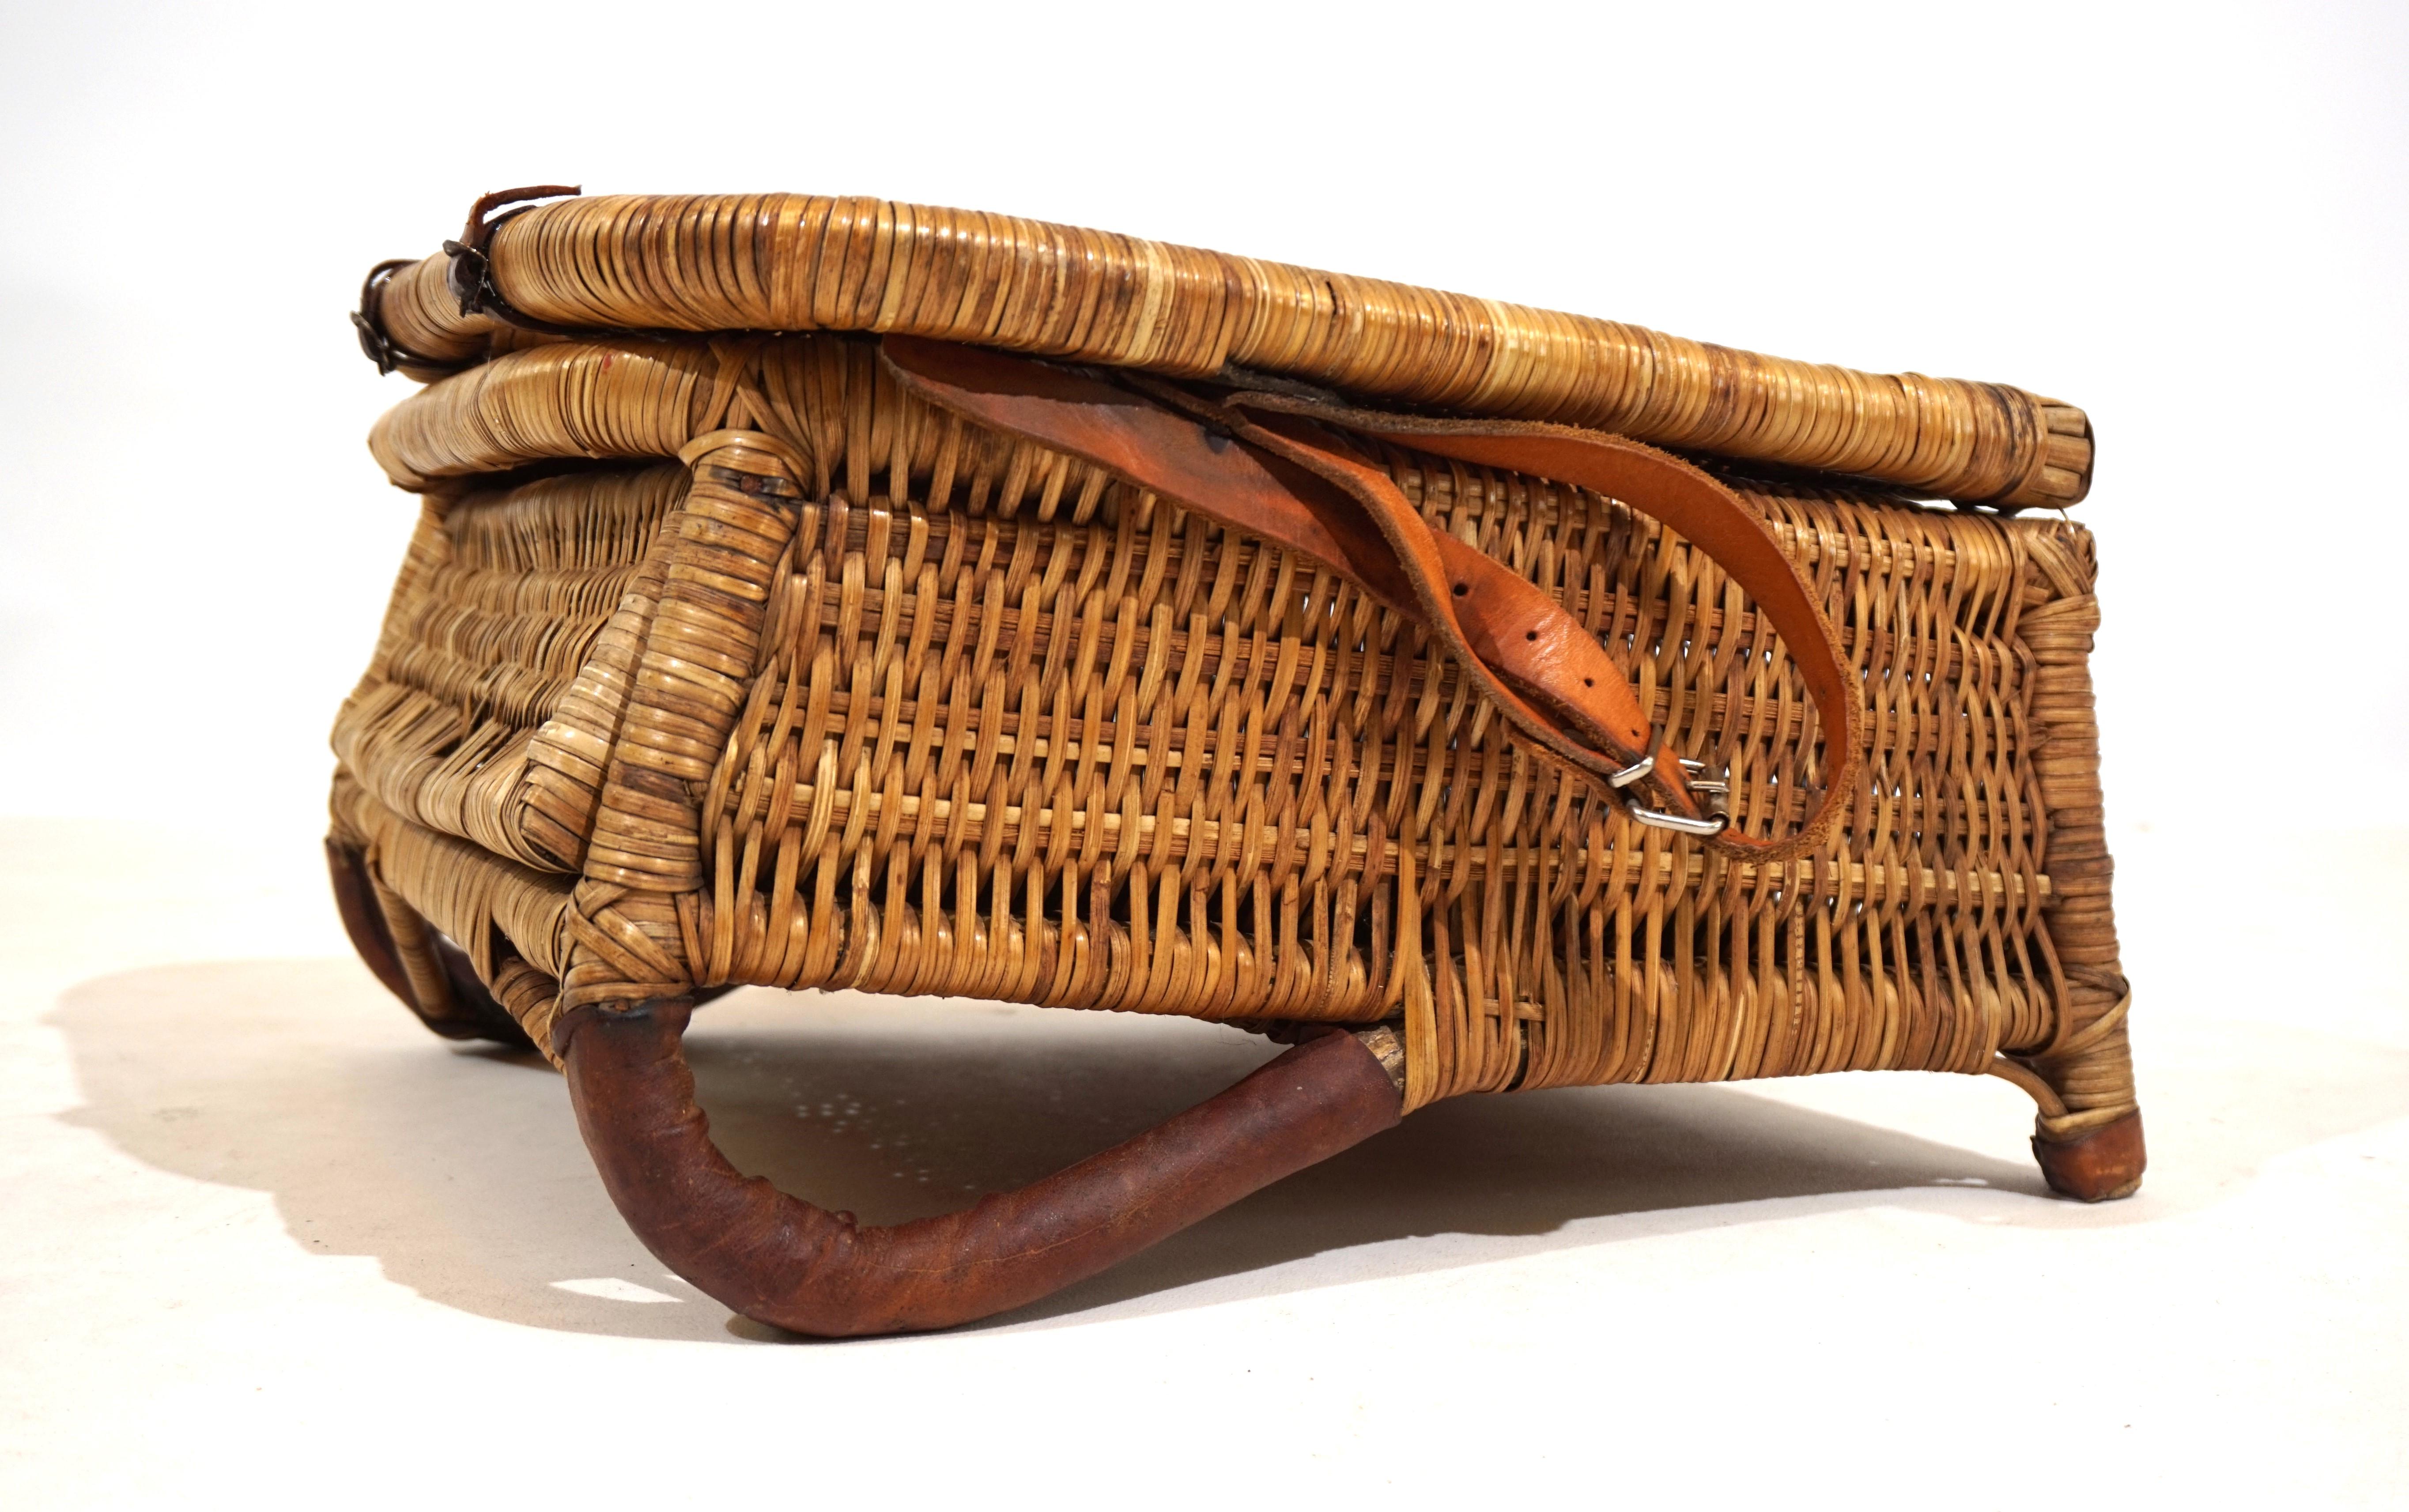 Ein antiker Strandkorb, wahrscheinlich aus den 1940er Jahren, in einem schönen honigfarbenen Rattangeflecht und braunem Leder.  Das Rattan ist in perfektem Zustand, ohne Brüche oder fehlende Teile. Der Stuhl hat auch die originalen Lederriemen. Der